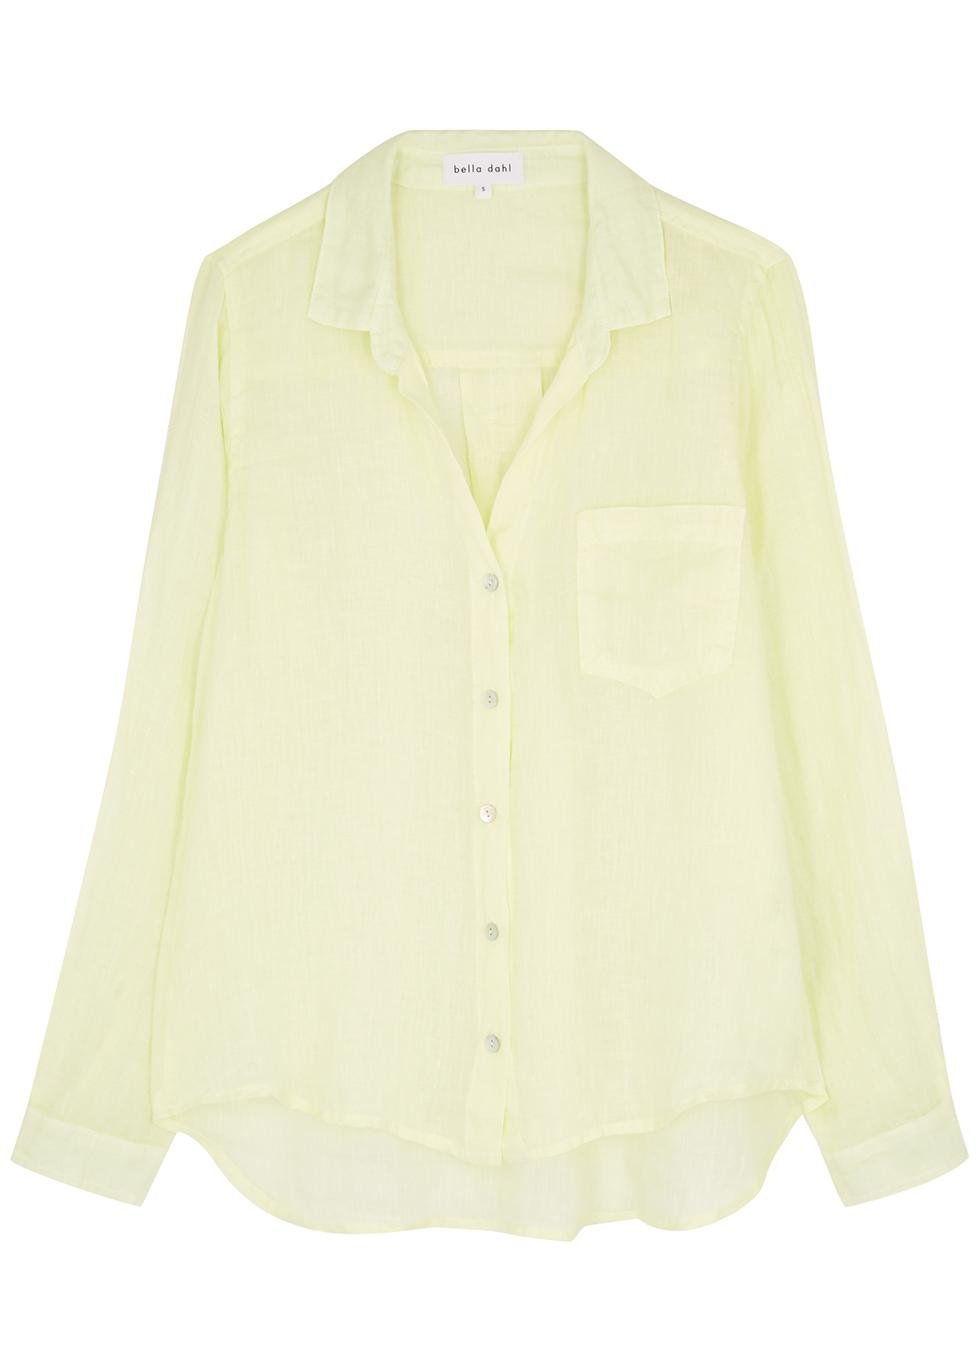 Yellow linen shirt by BELLA DAHL | jellibeans